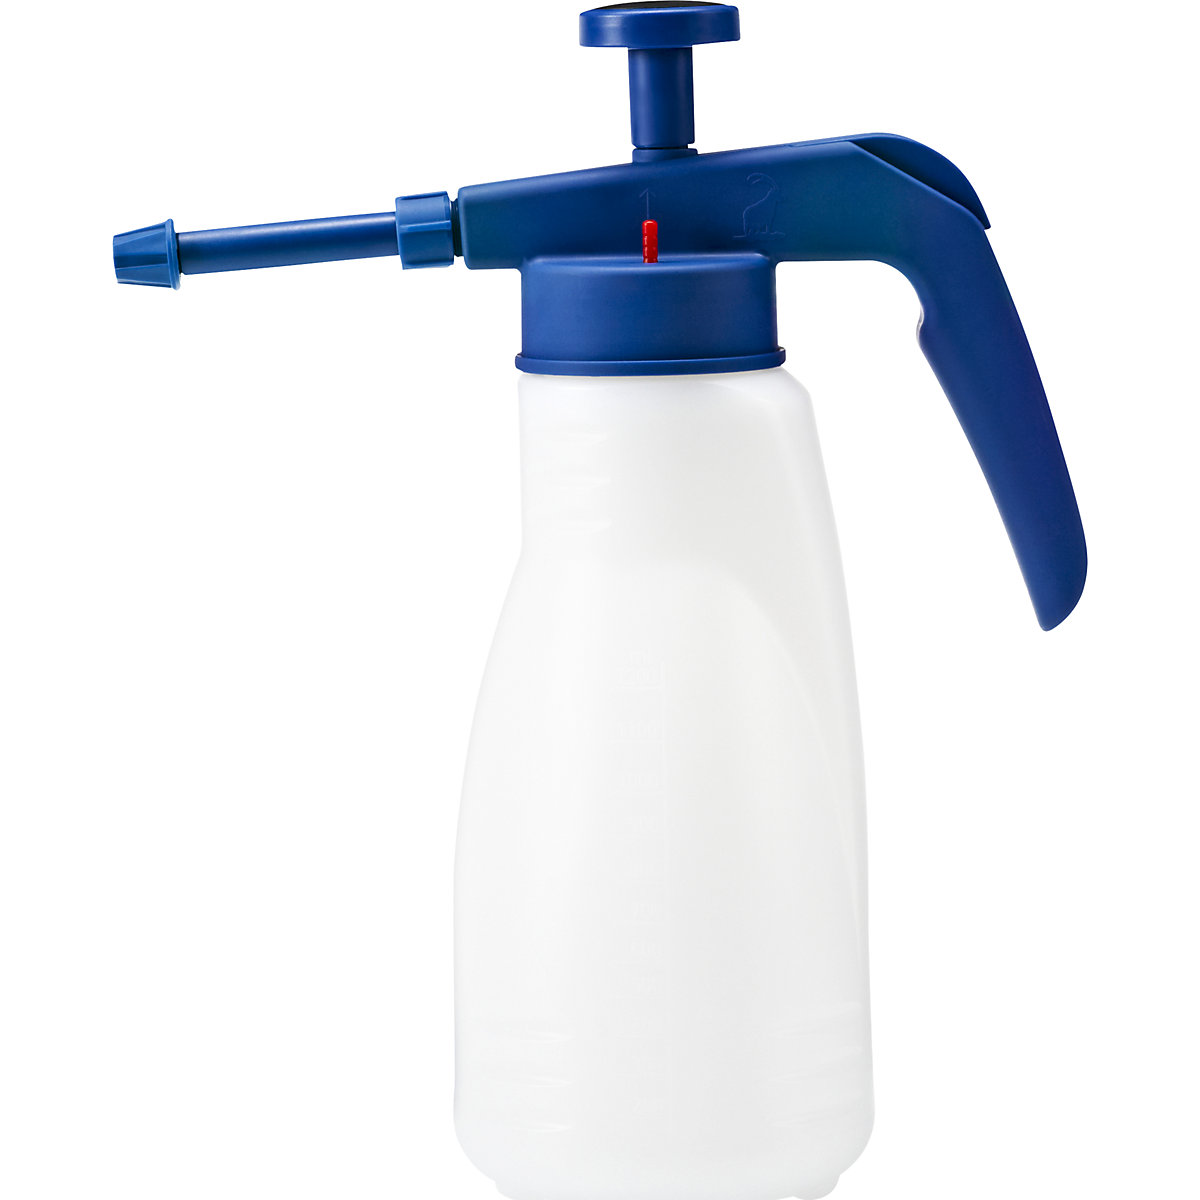 Pump spray container – PRESSOL